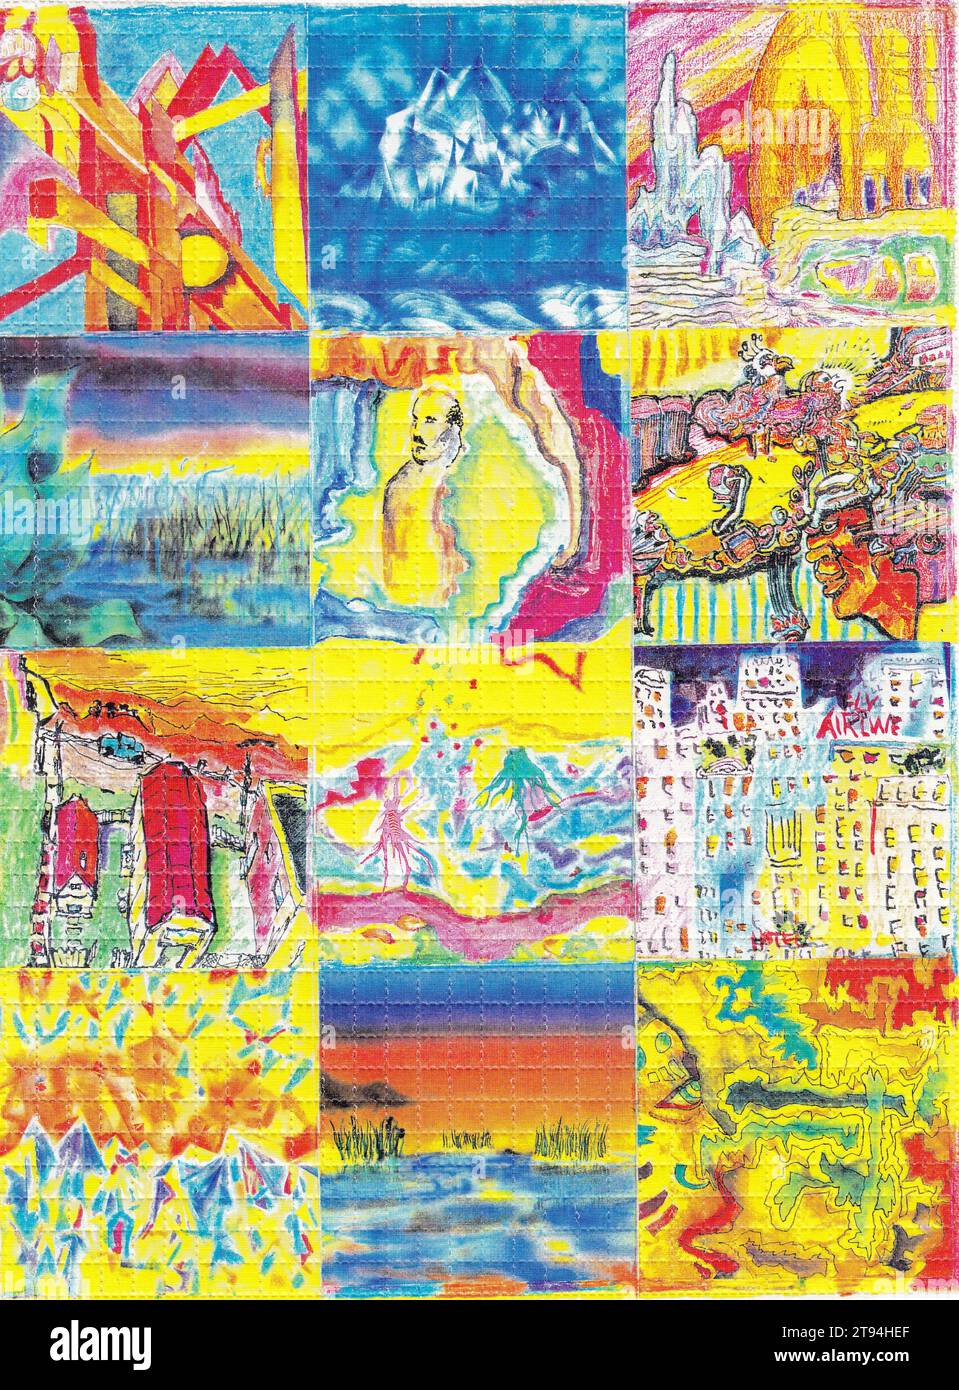 Jerry Garcia Art, 1998 - acide de blotter - LSD [diéthylamide de l'acide lysergique] Banque D'Images